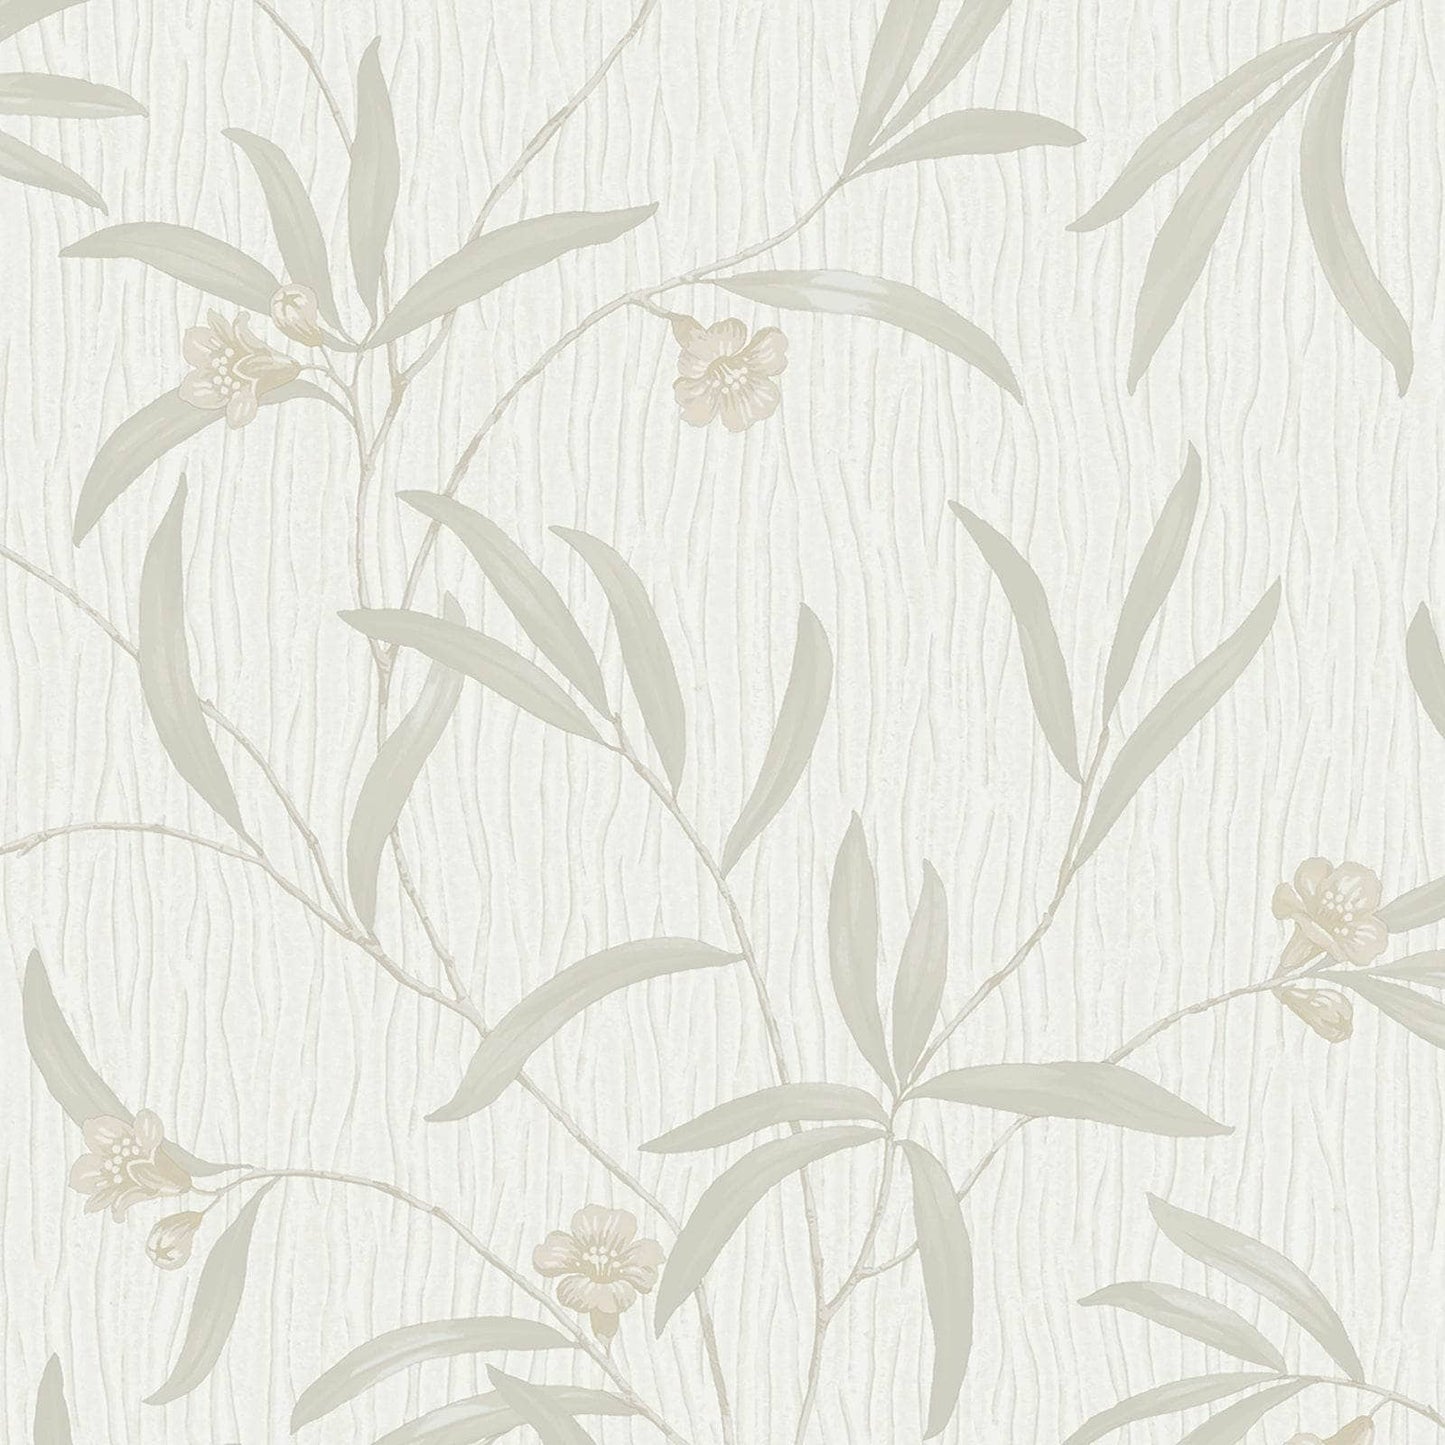  -  Belgravia Tiffany Floral White & Cream Wallpaper - 41330  -  60009418